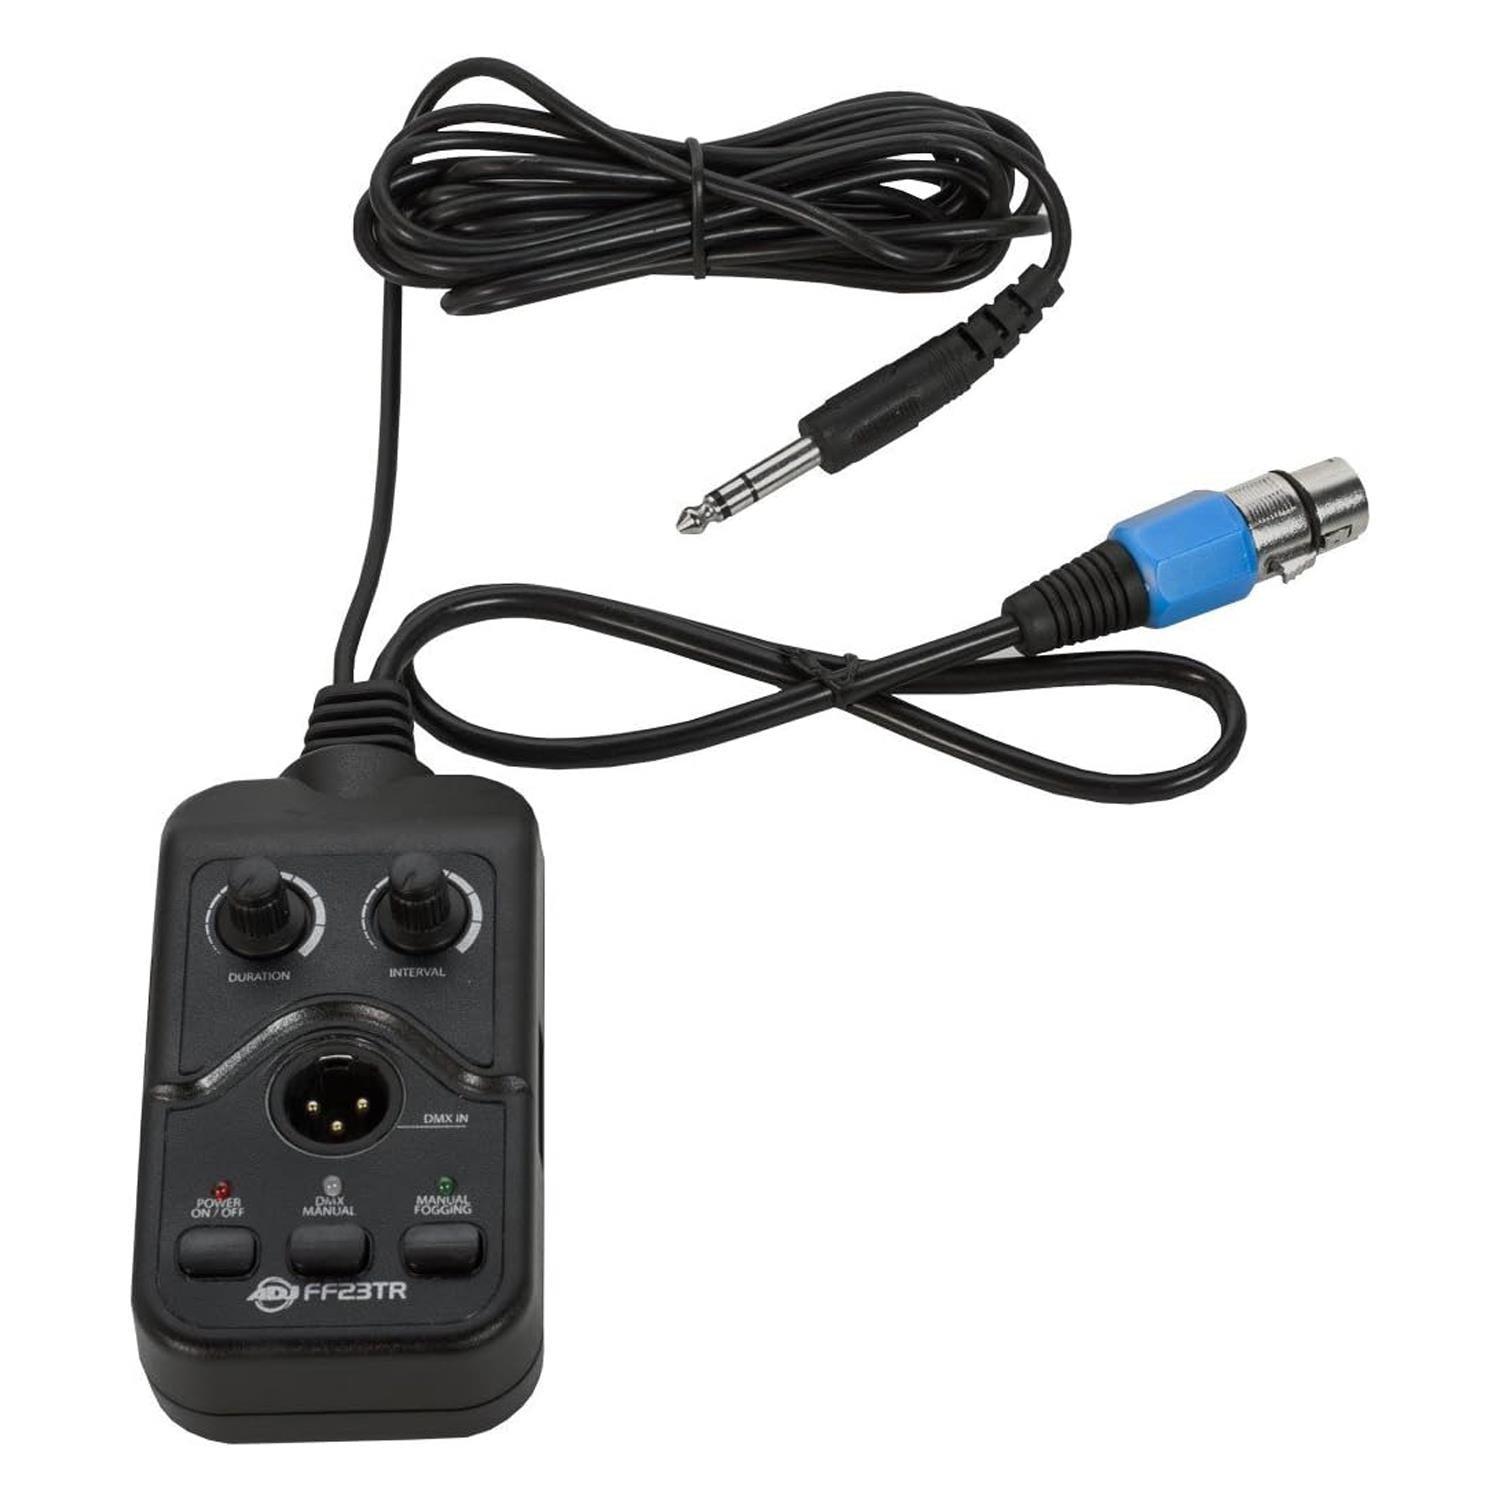 ADJ FF23TR Fog Fury DMX Timer Remote Control - DY Pro Audio